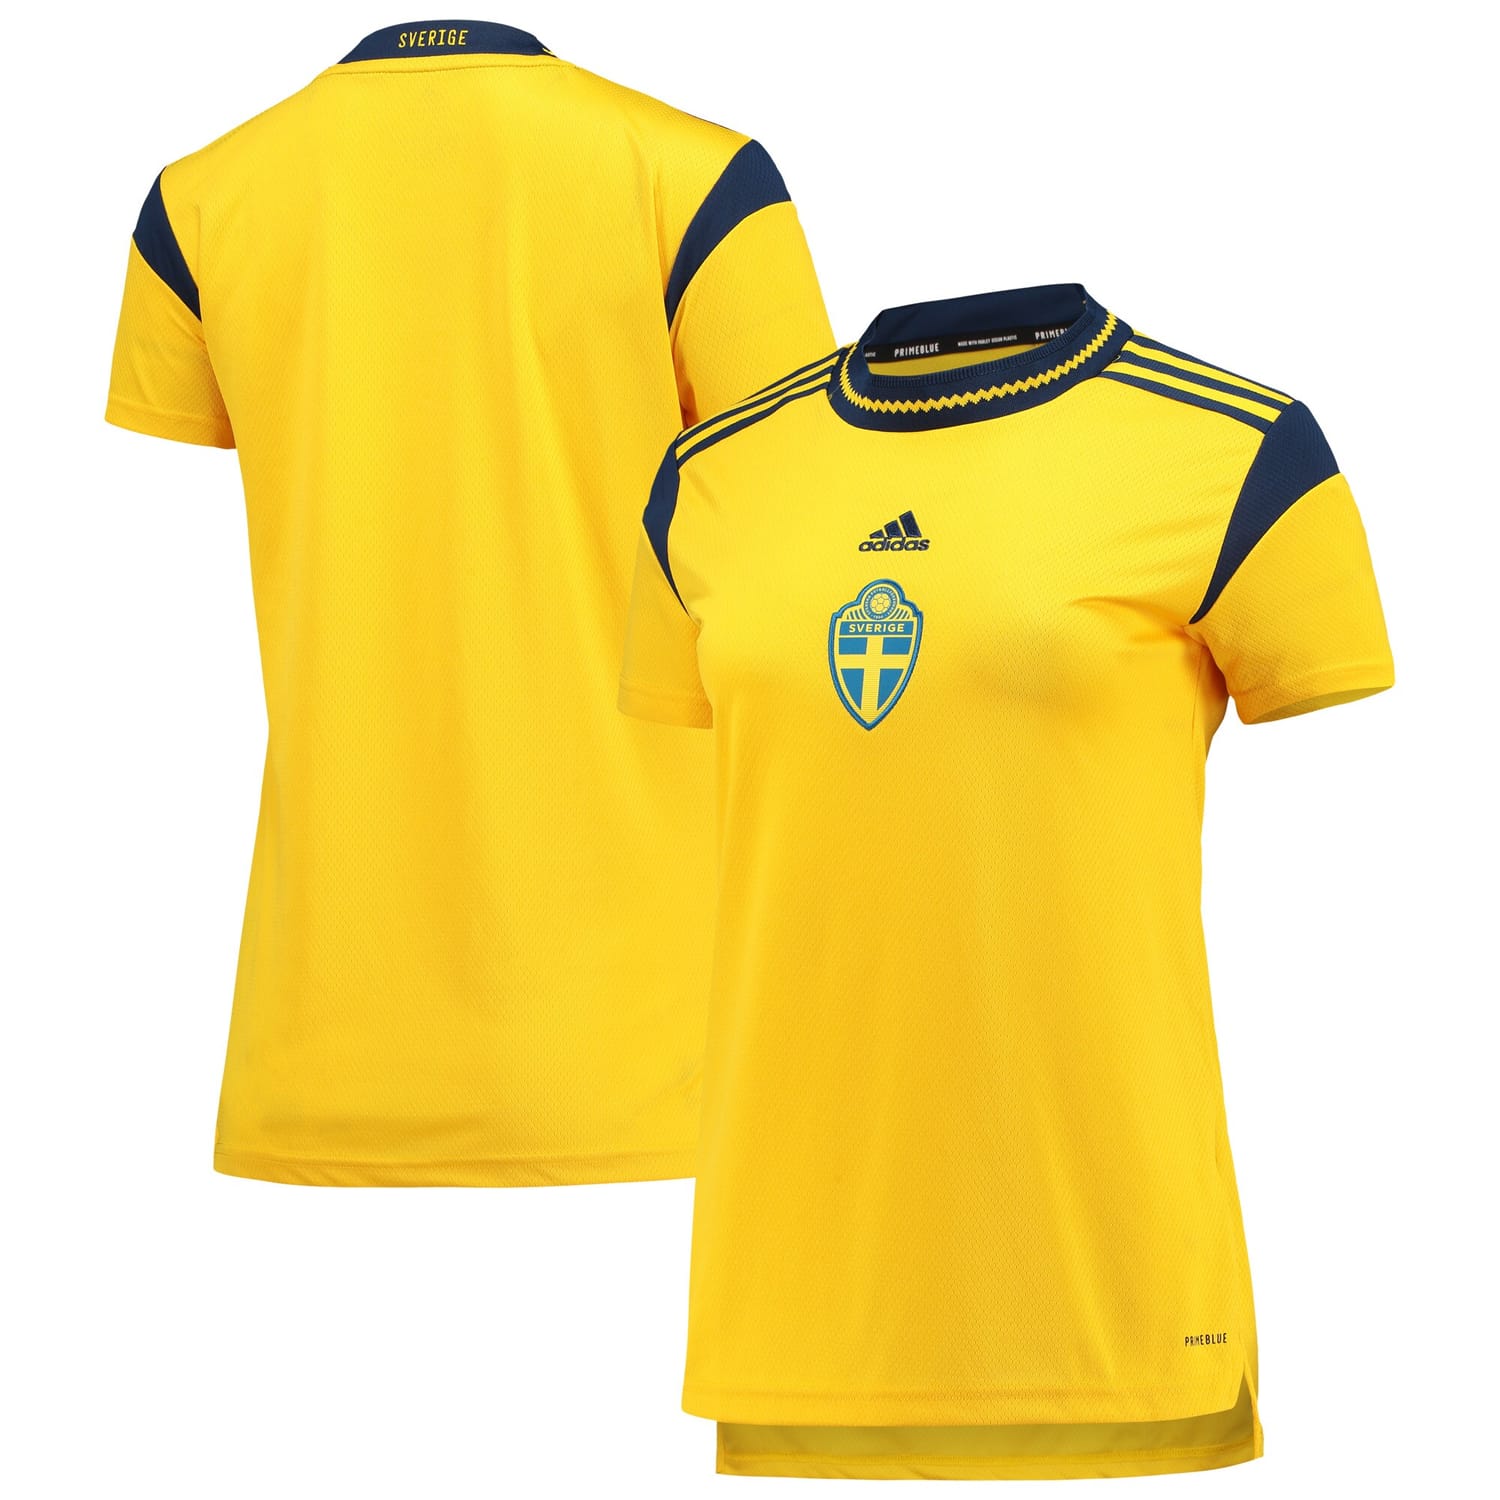 Sweden National Team Jersey Shirt Yellow 2022 for Women